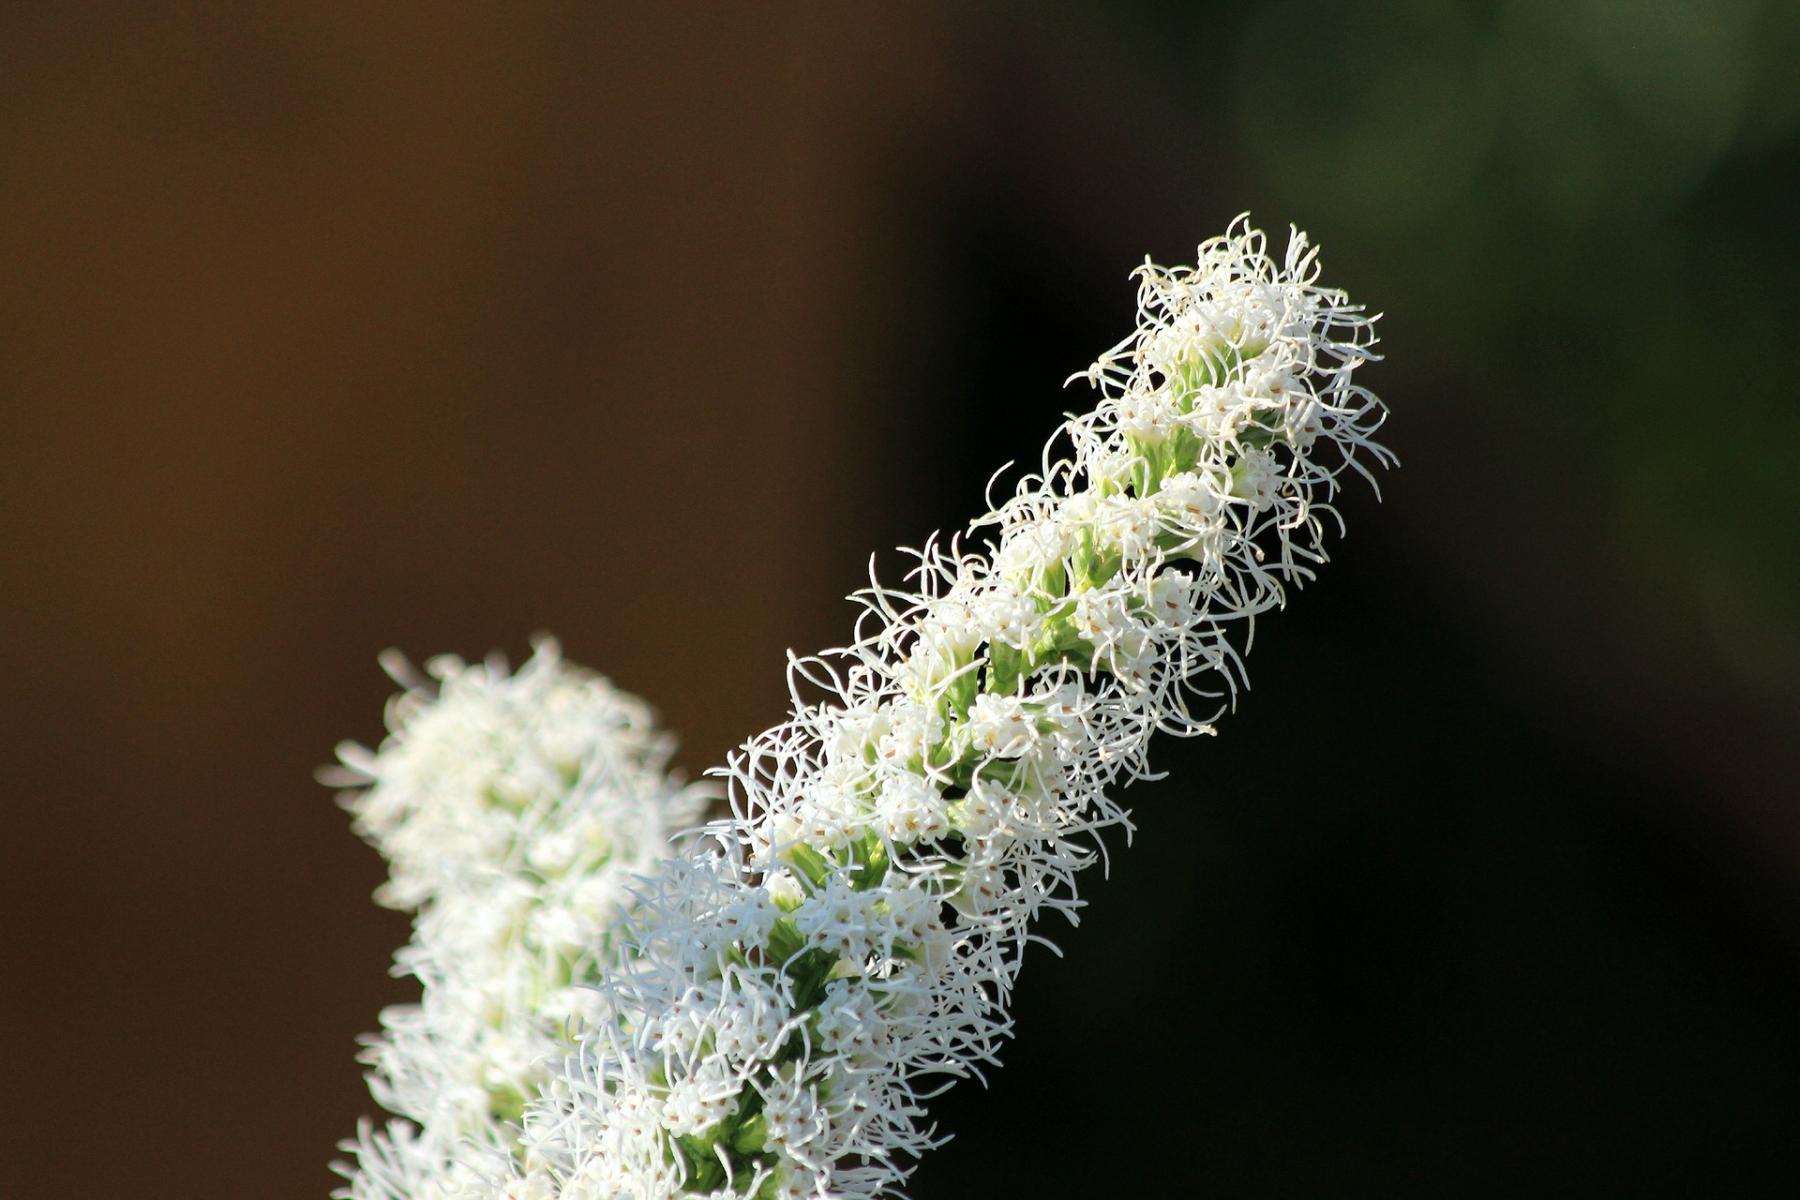 Picture of Liatris alba, white-flowering liatris. 